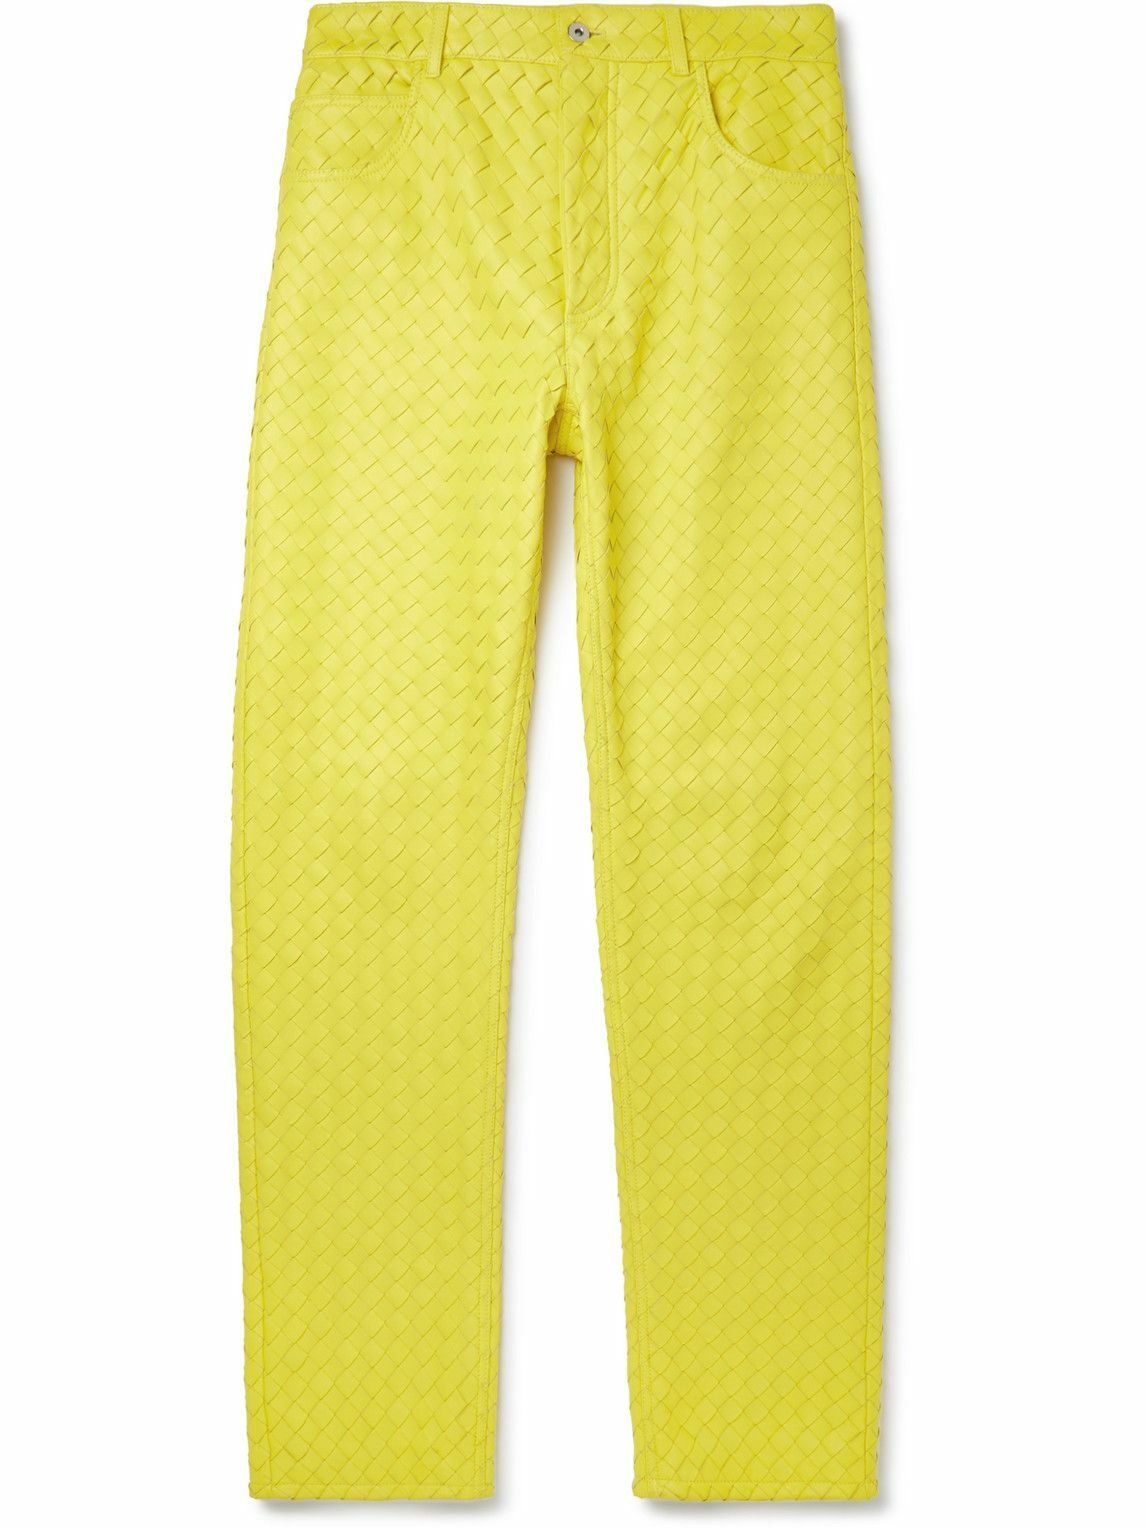 Photo: Bottega Veneta - Intrecciato Leather Trousers - Yellow